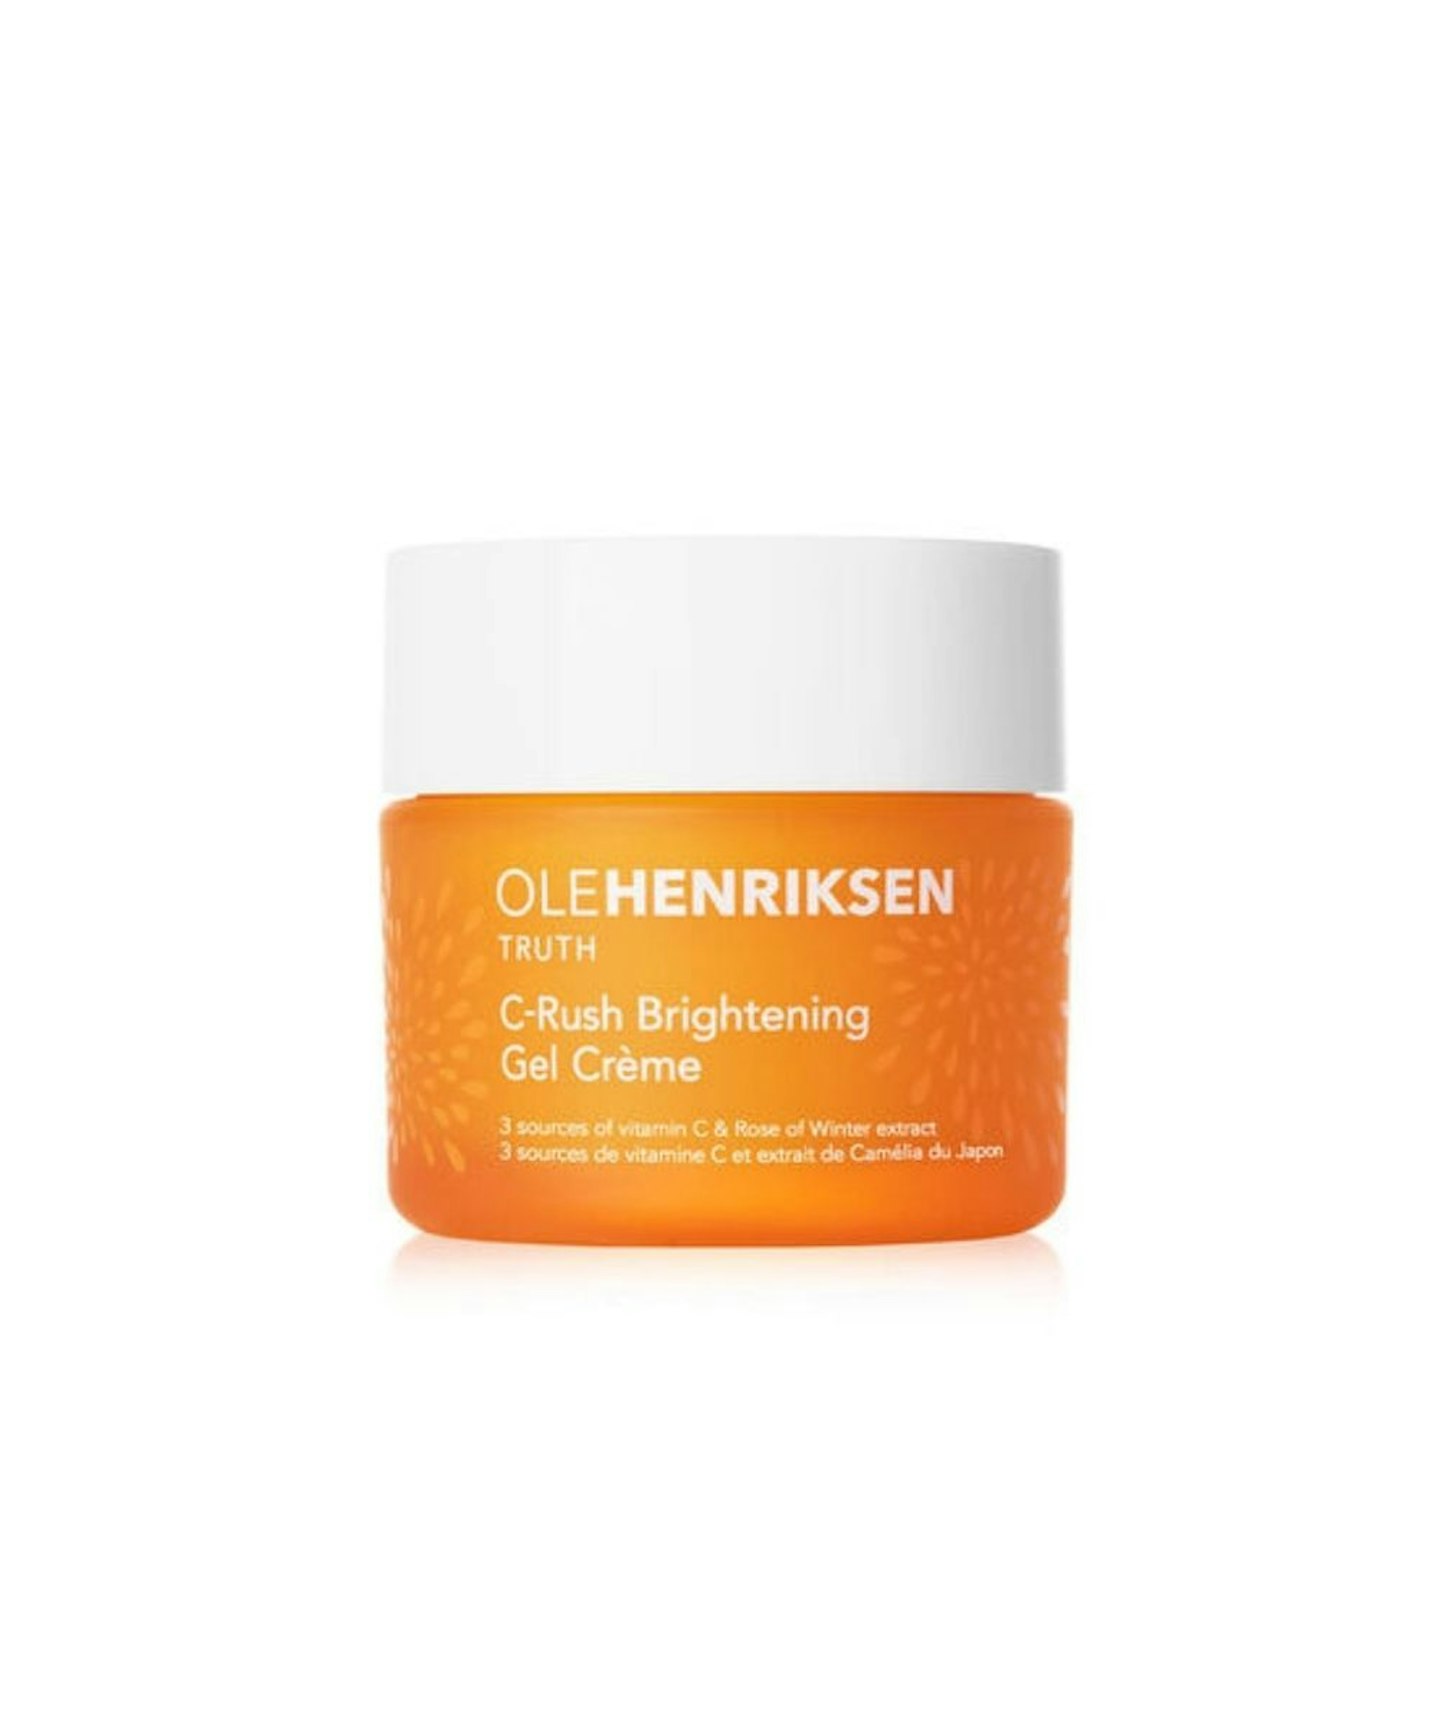 Ole Henriksen C-Rush Brightening Gel Crème, 50ml